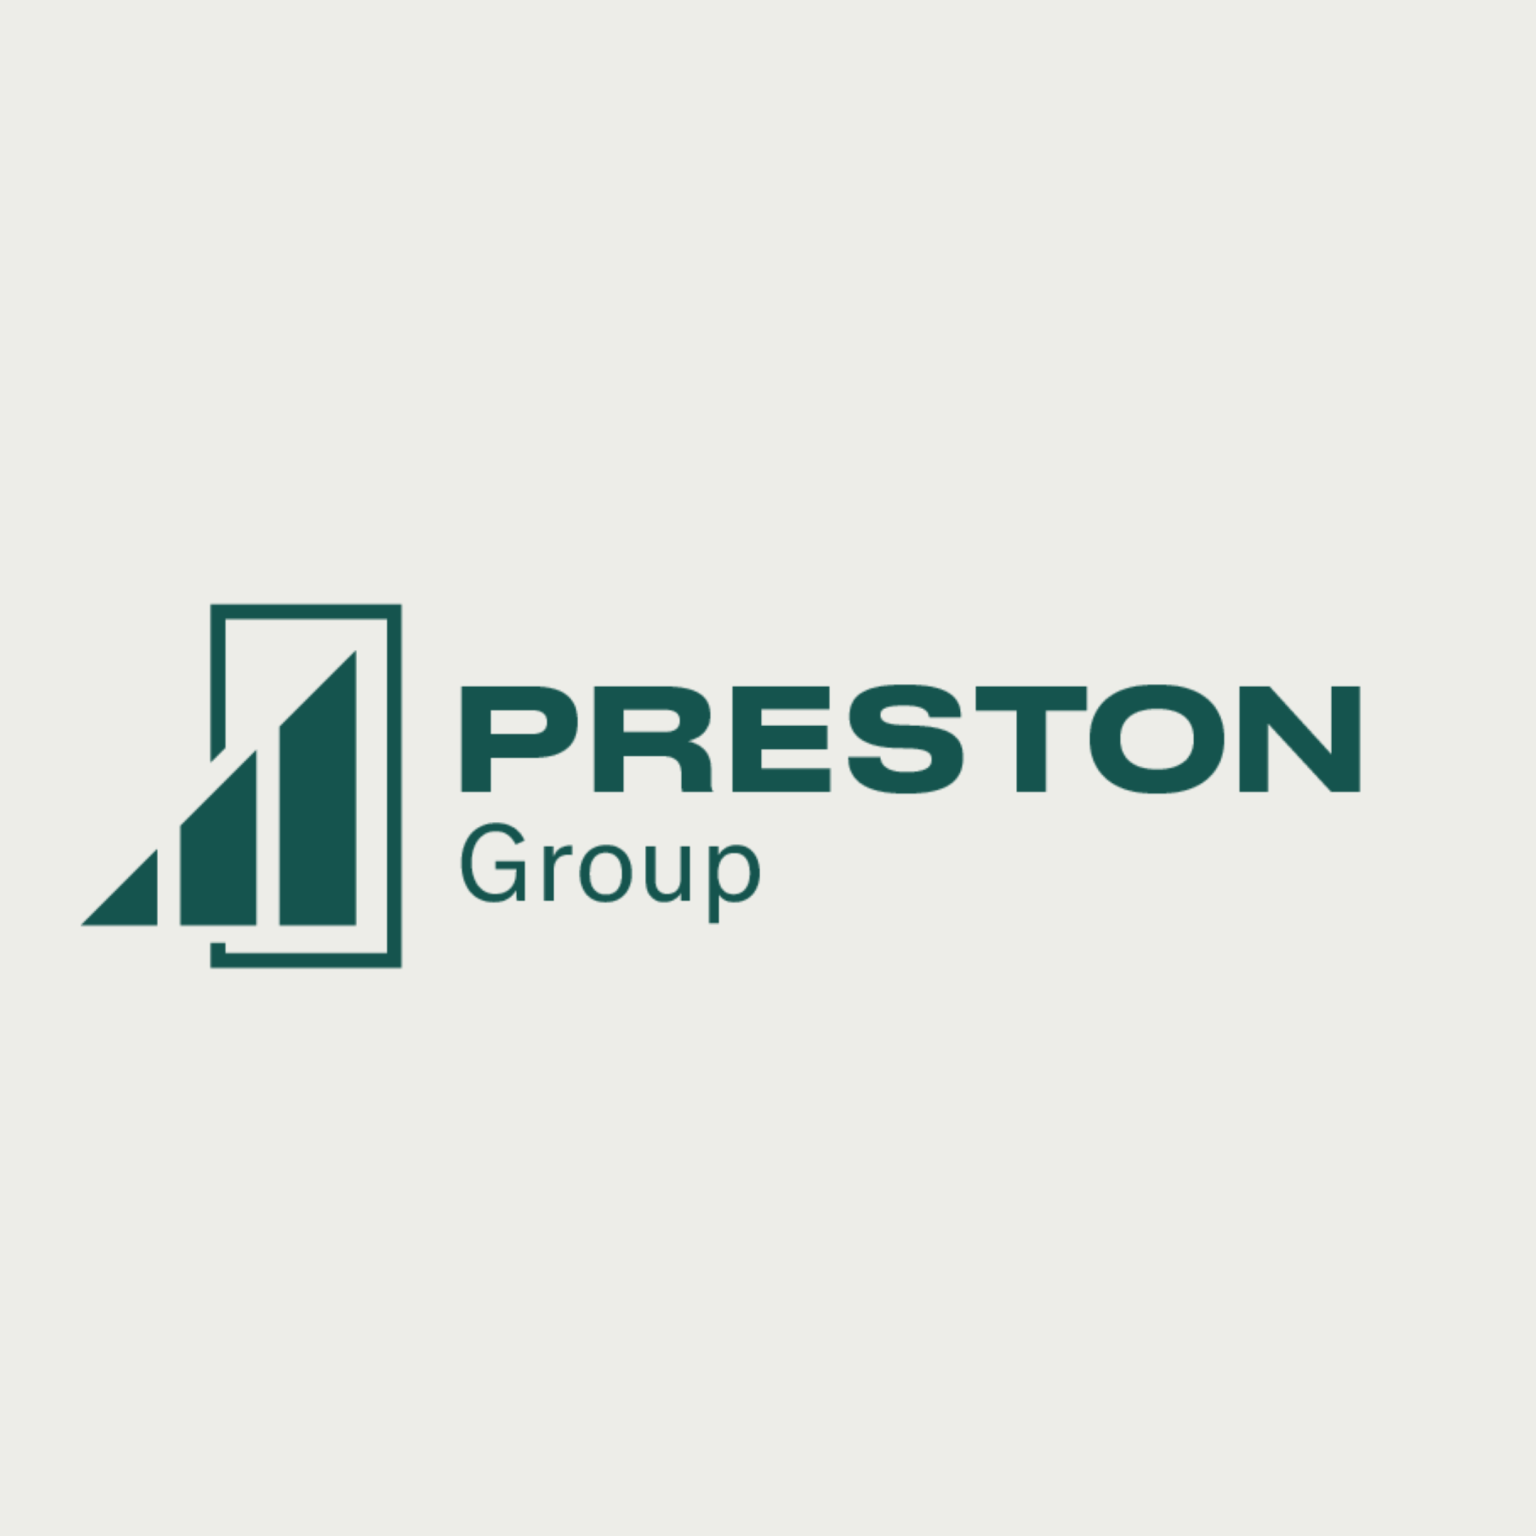 Preston Group logo